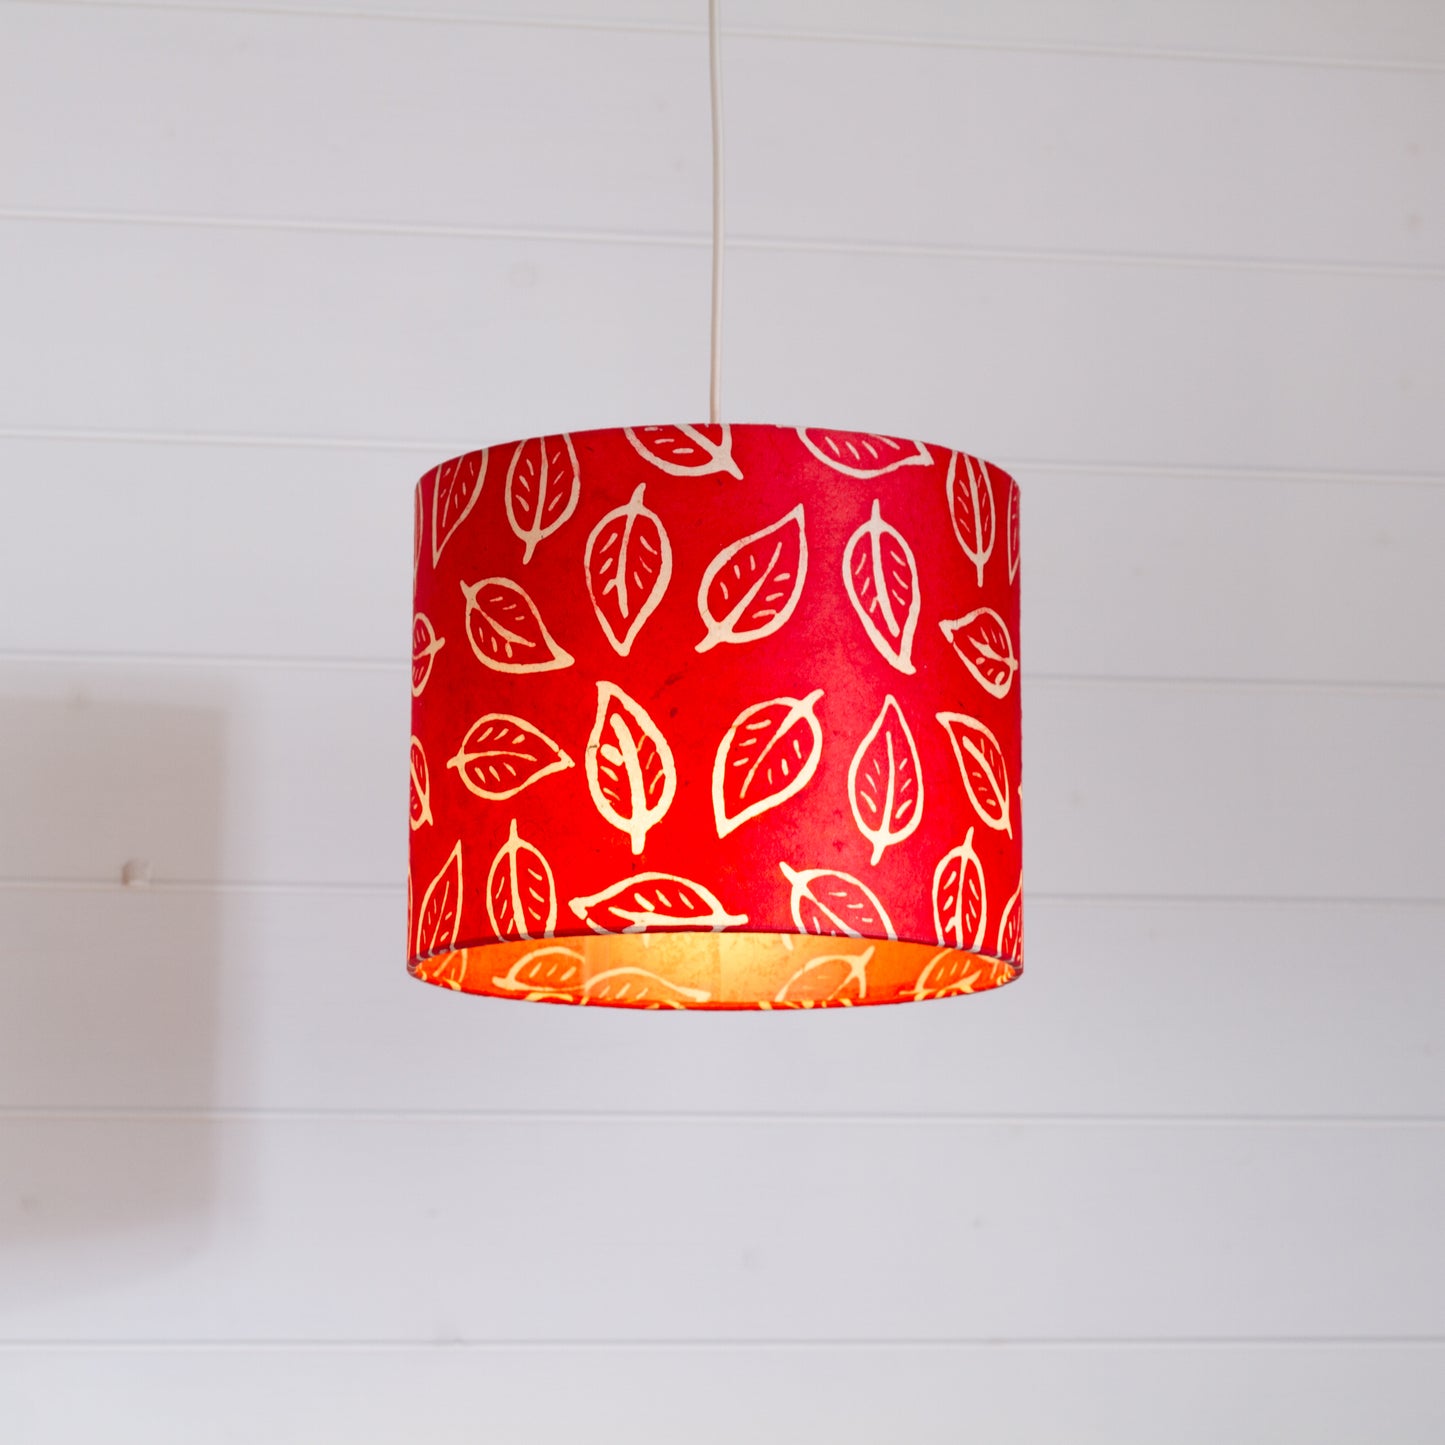 Drum Lamp Shade - P30 - Batik Leaf on Red, 25cm x 20cm